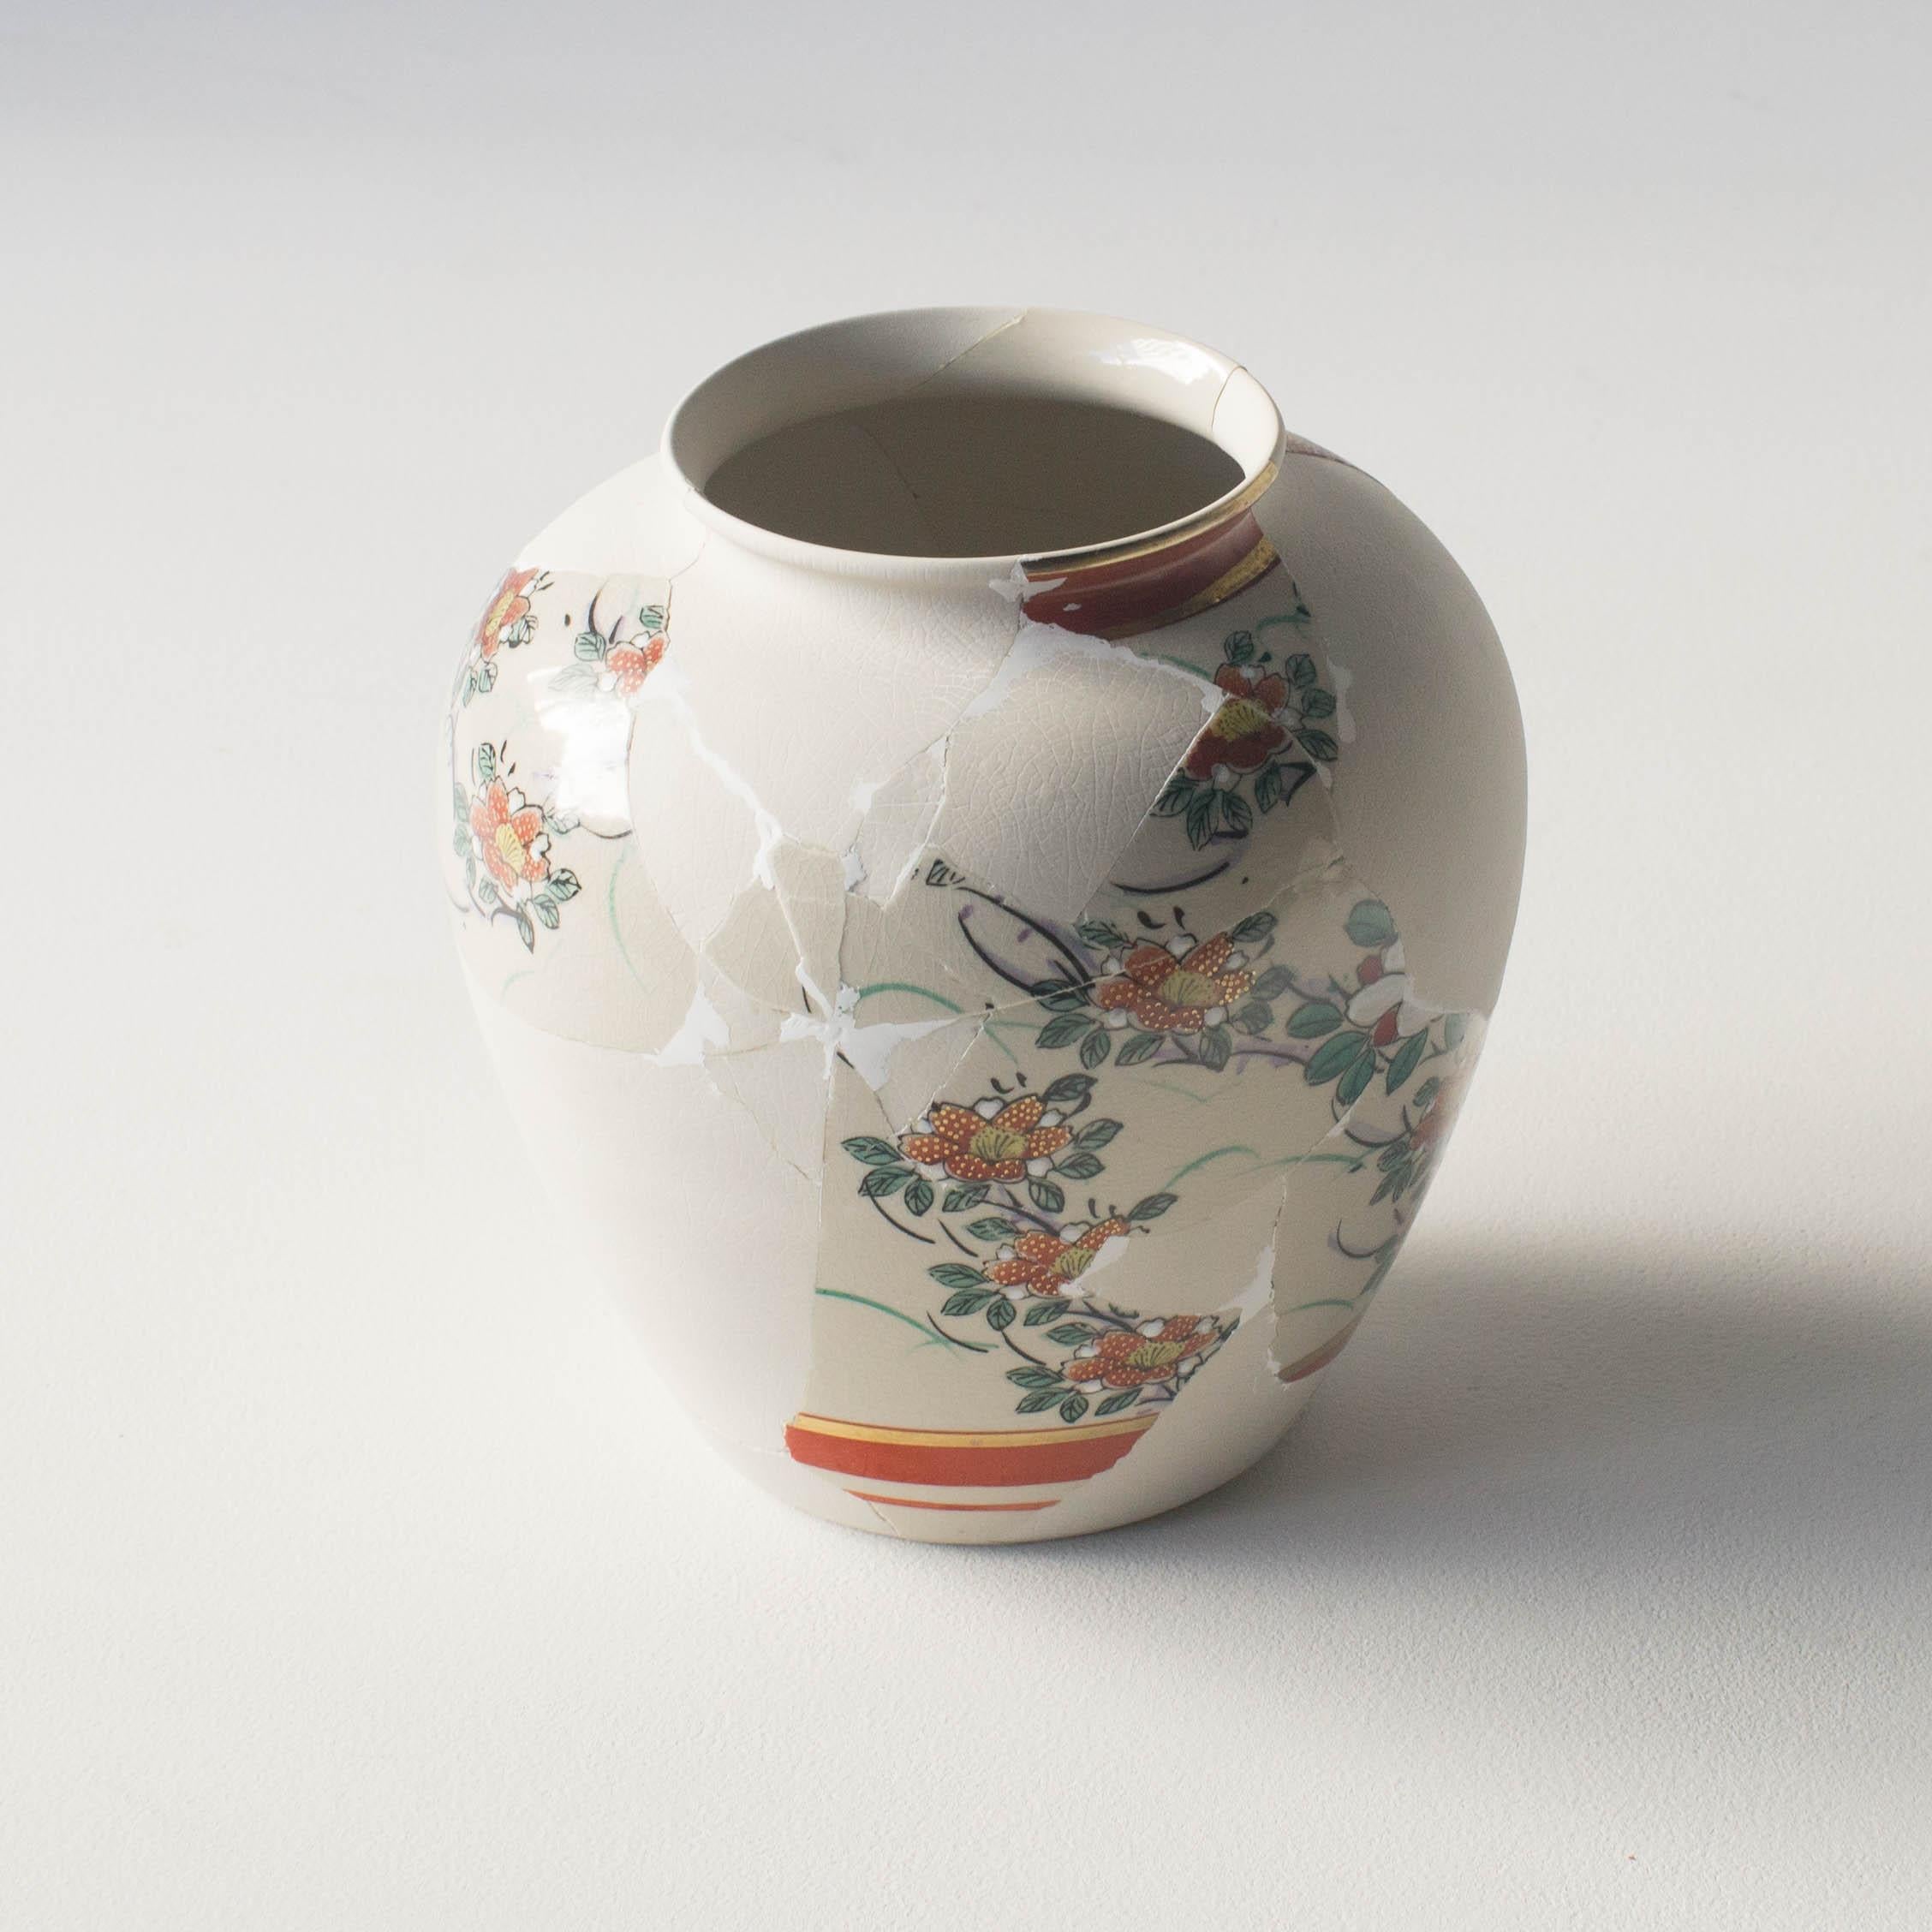 Cette série de céramiques est une œuvre unique de Norihiko Terayama. Il a cassé la céramique au début, et l'a transformée en de nombreux fragments. Il râpe quelques fragments
et faire sortir leurs motifs de la surface. Il leur a redonné leur forme